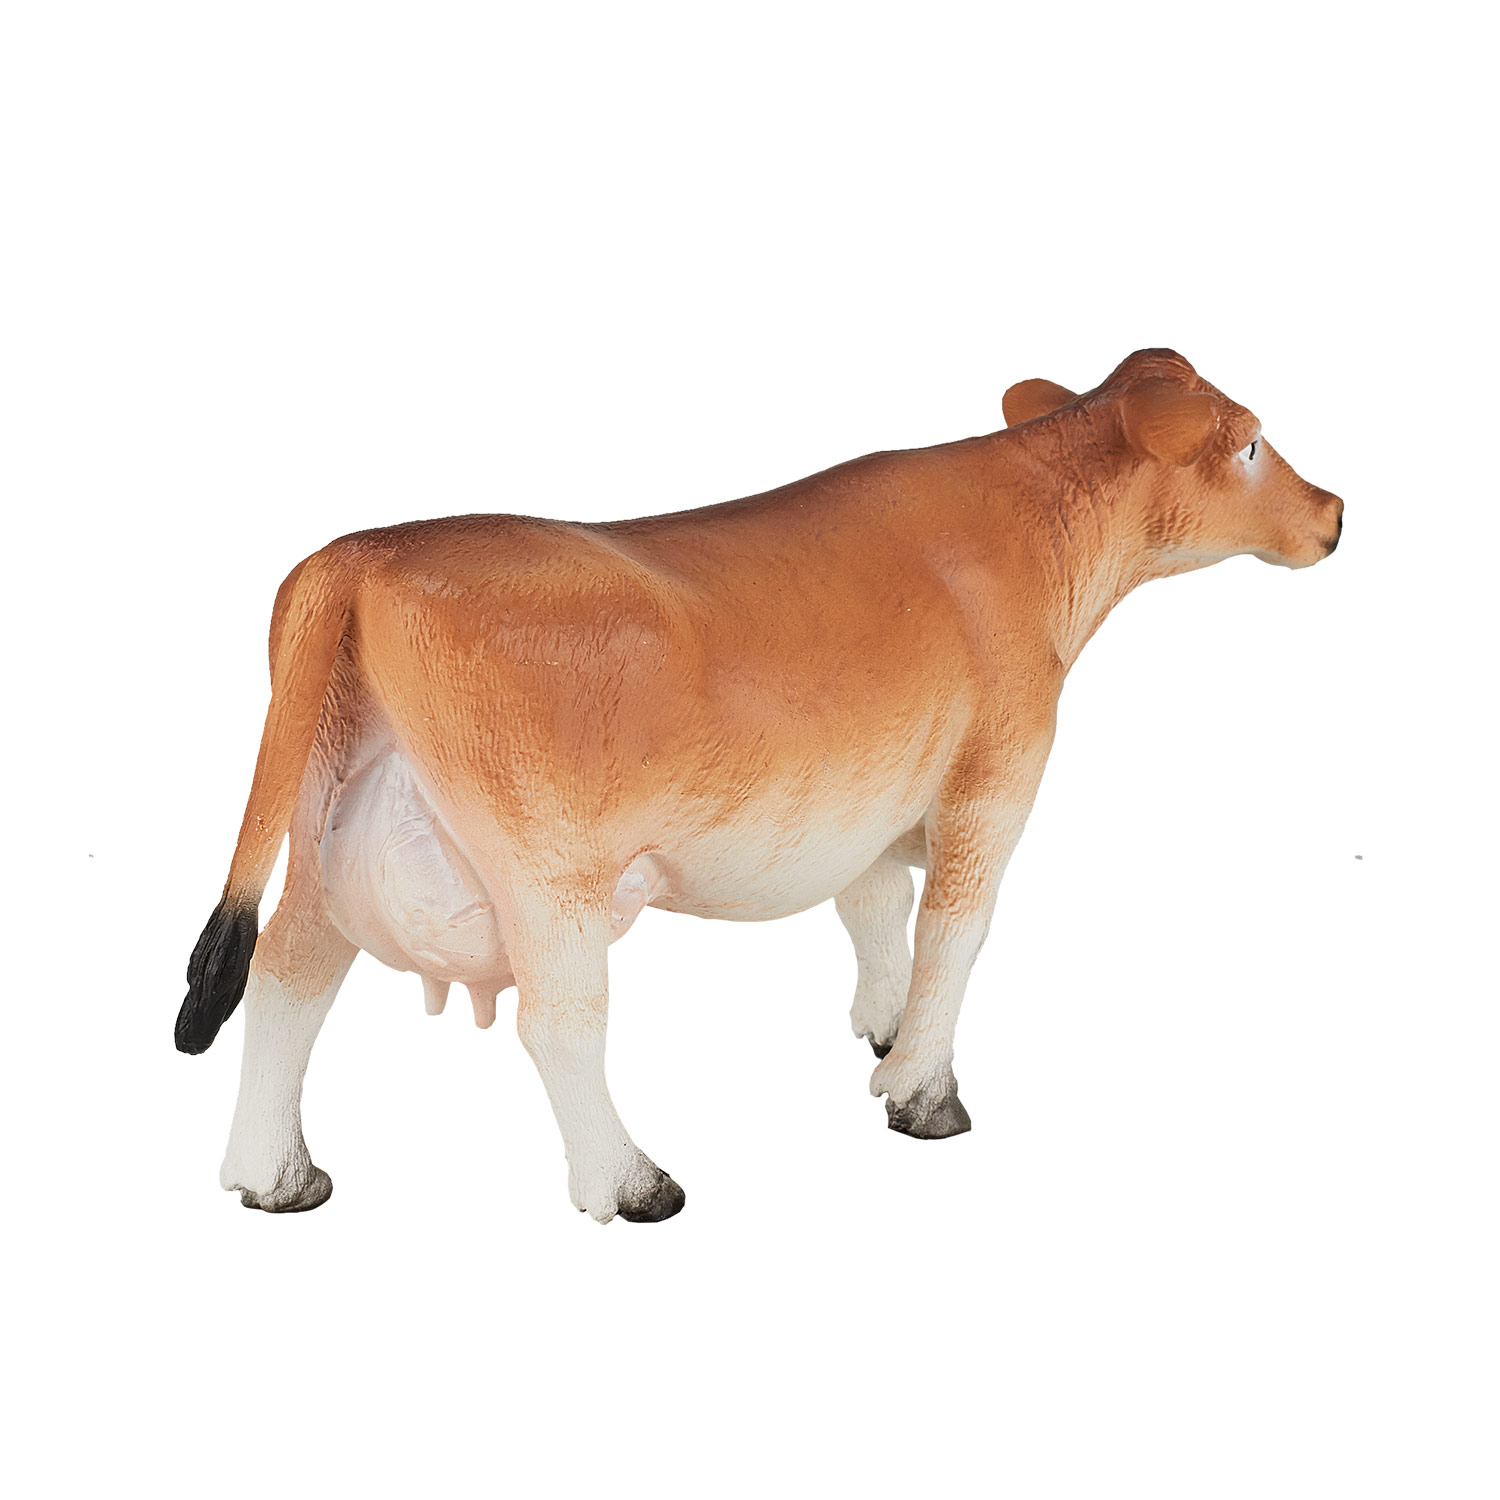 Vache Jersey Mojo Farmland - 387117